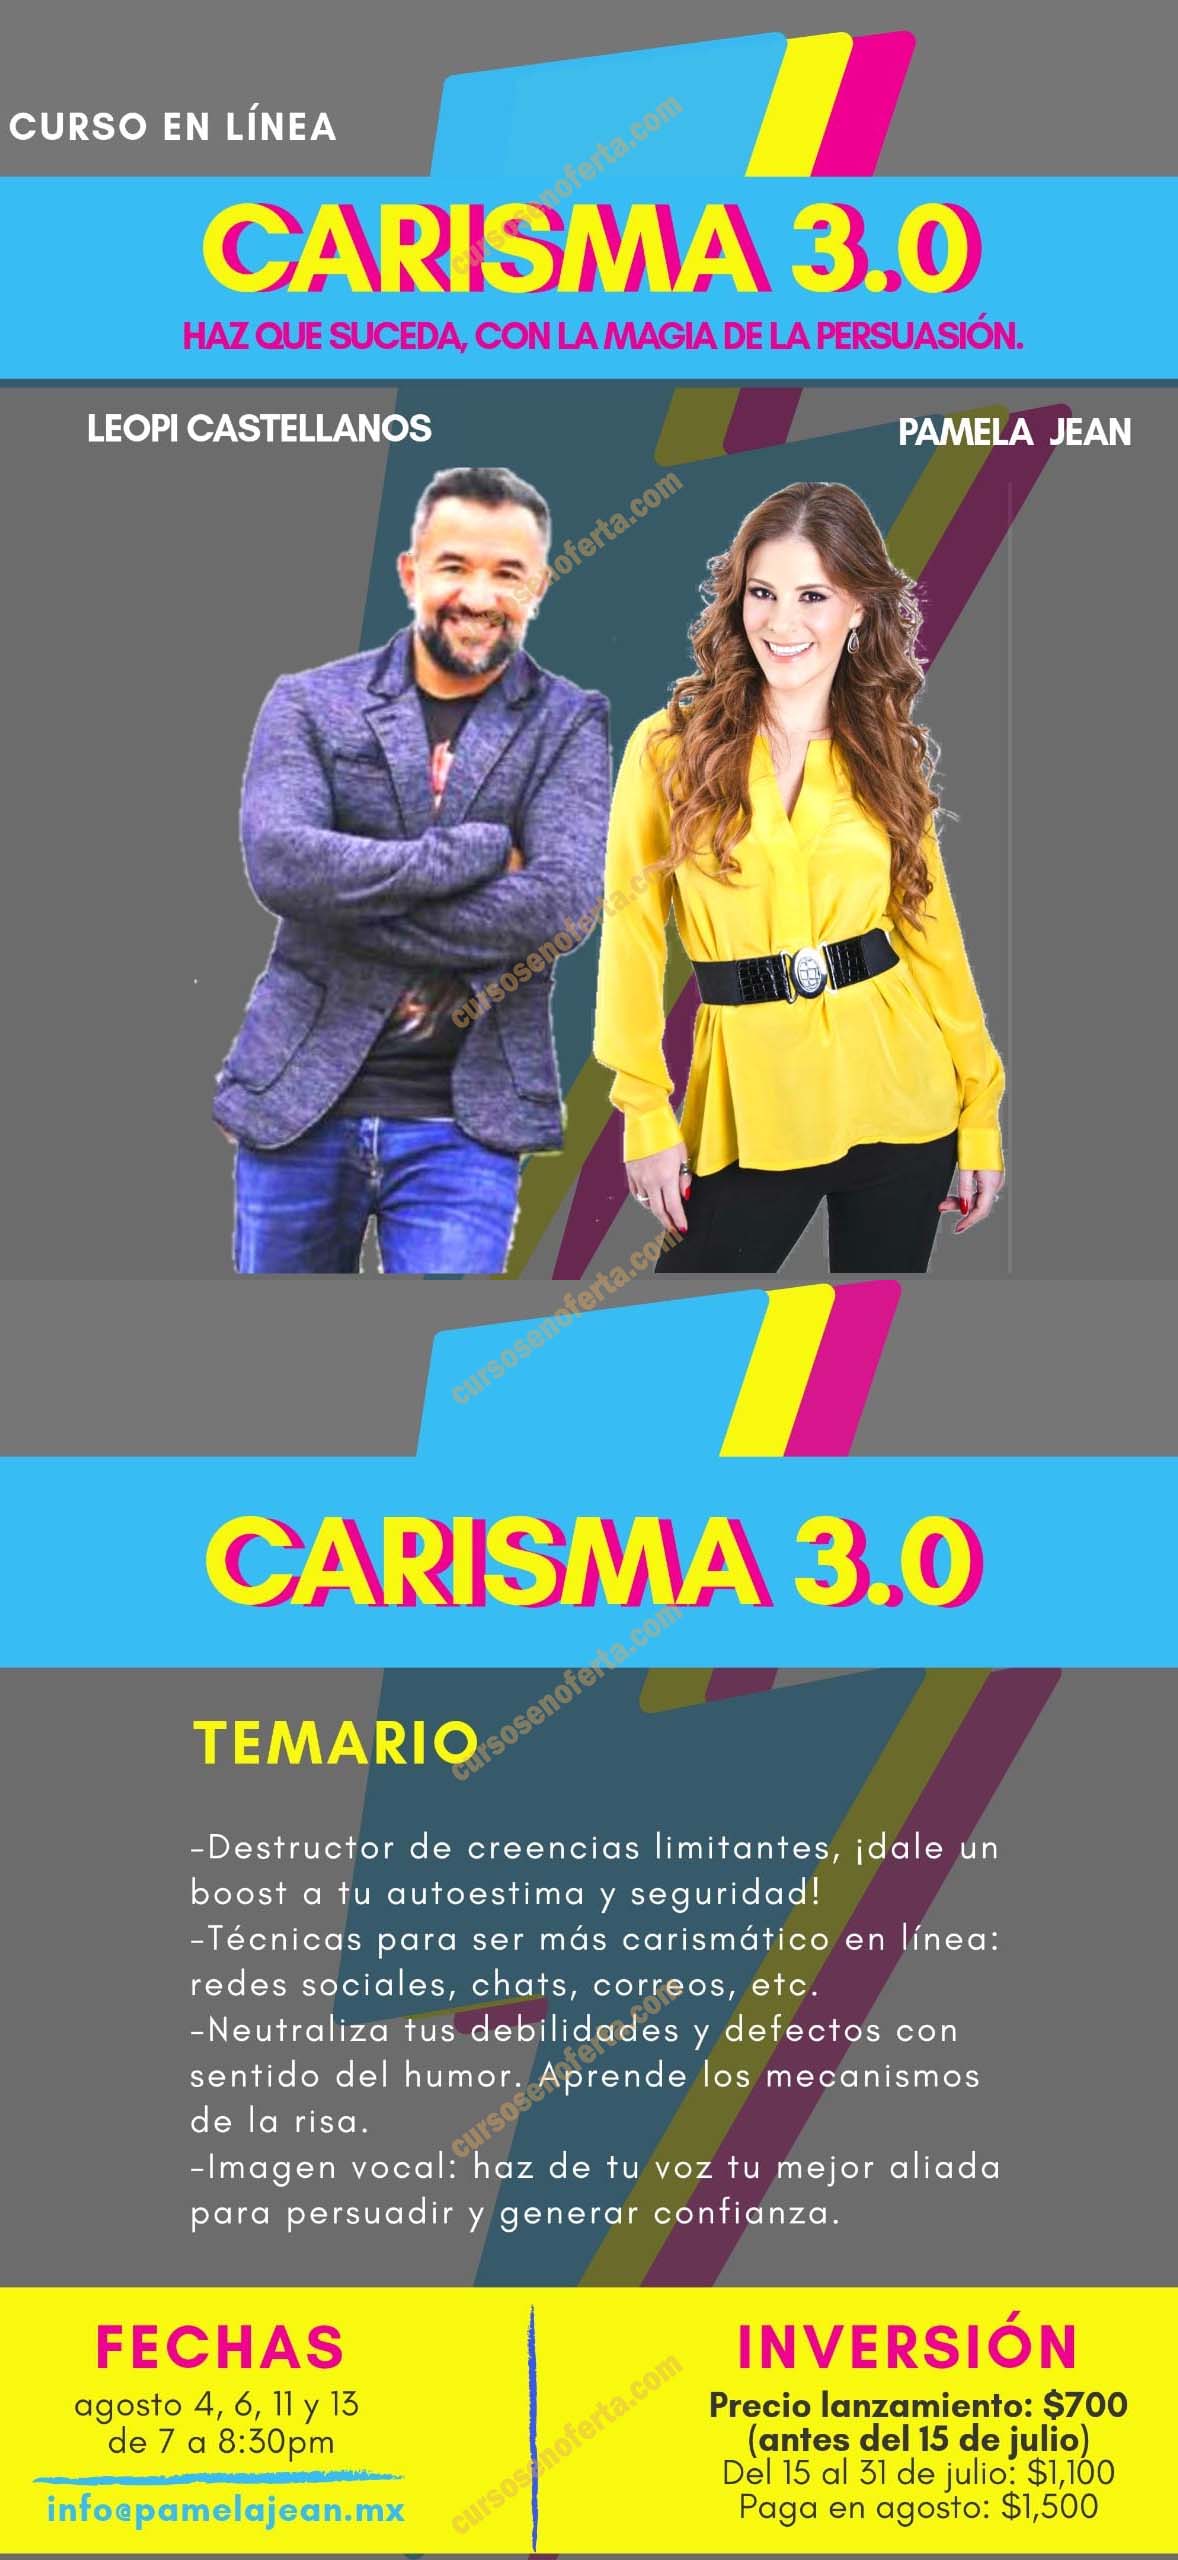 Carisma 3.0 - leopi